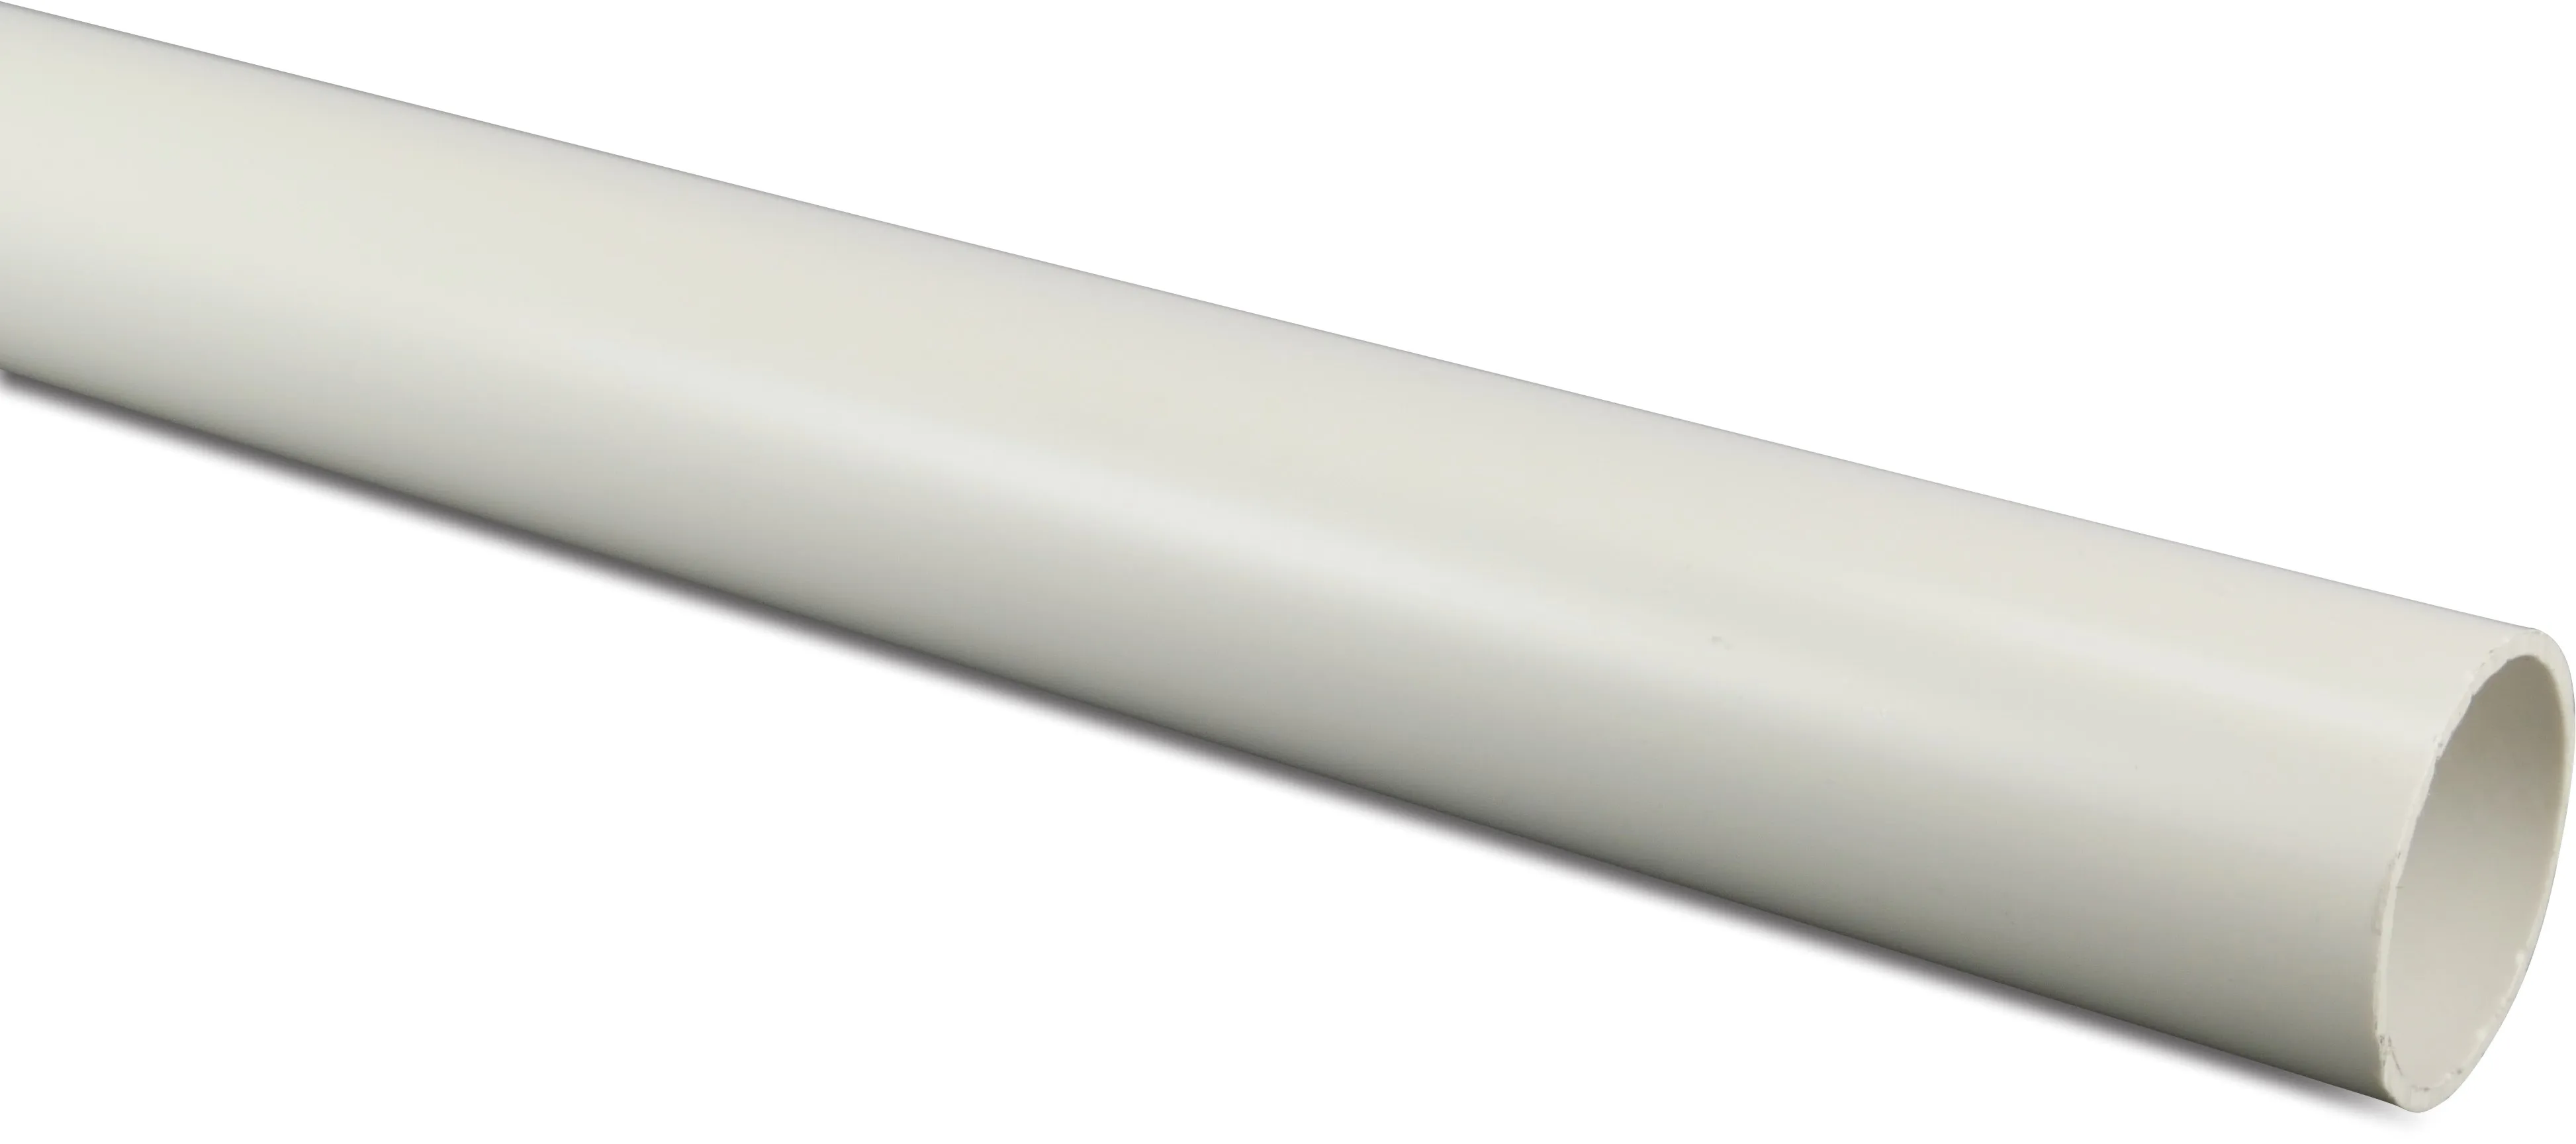 Pressure pipe PVC-U 1 1/2" x 2,5 mm plain Class D-PN12 white 3m